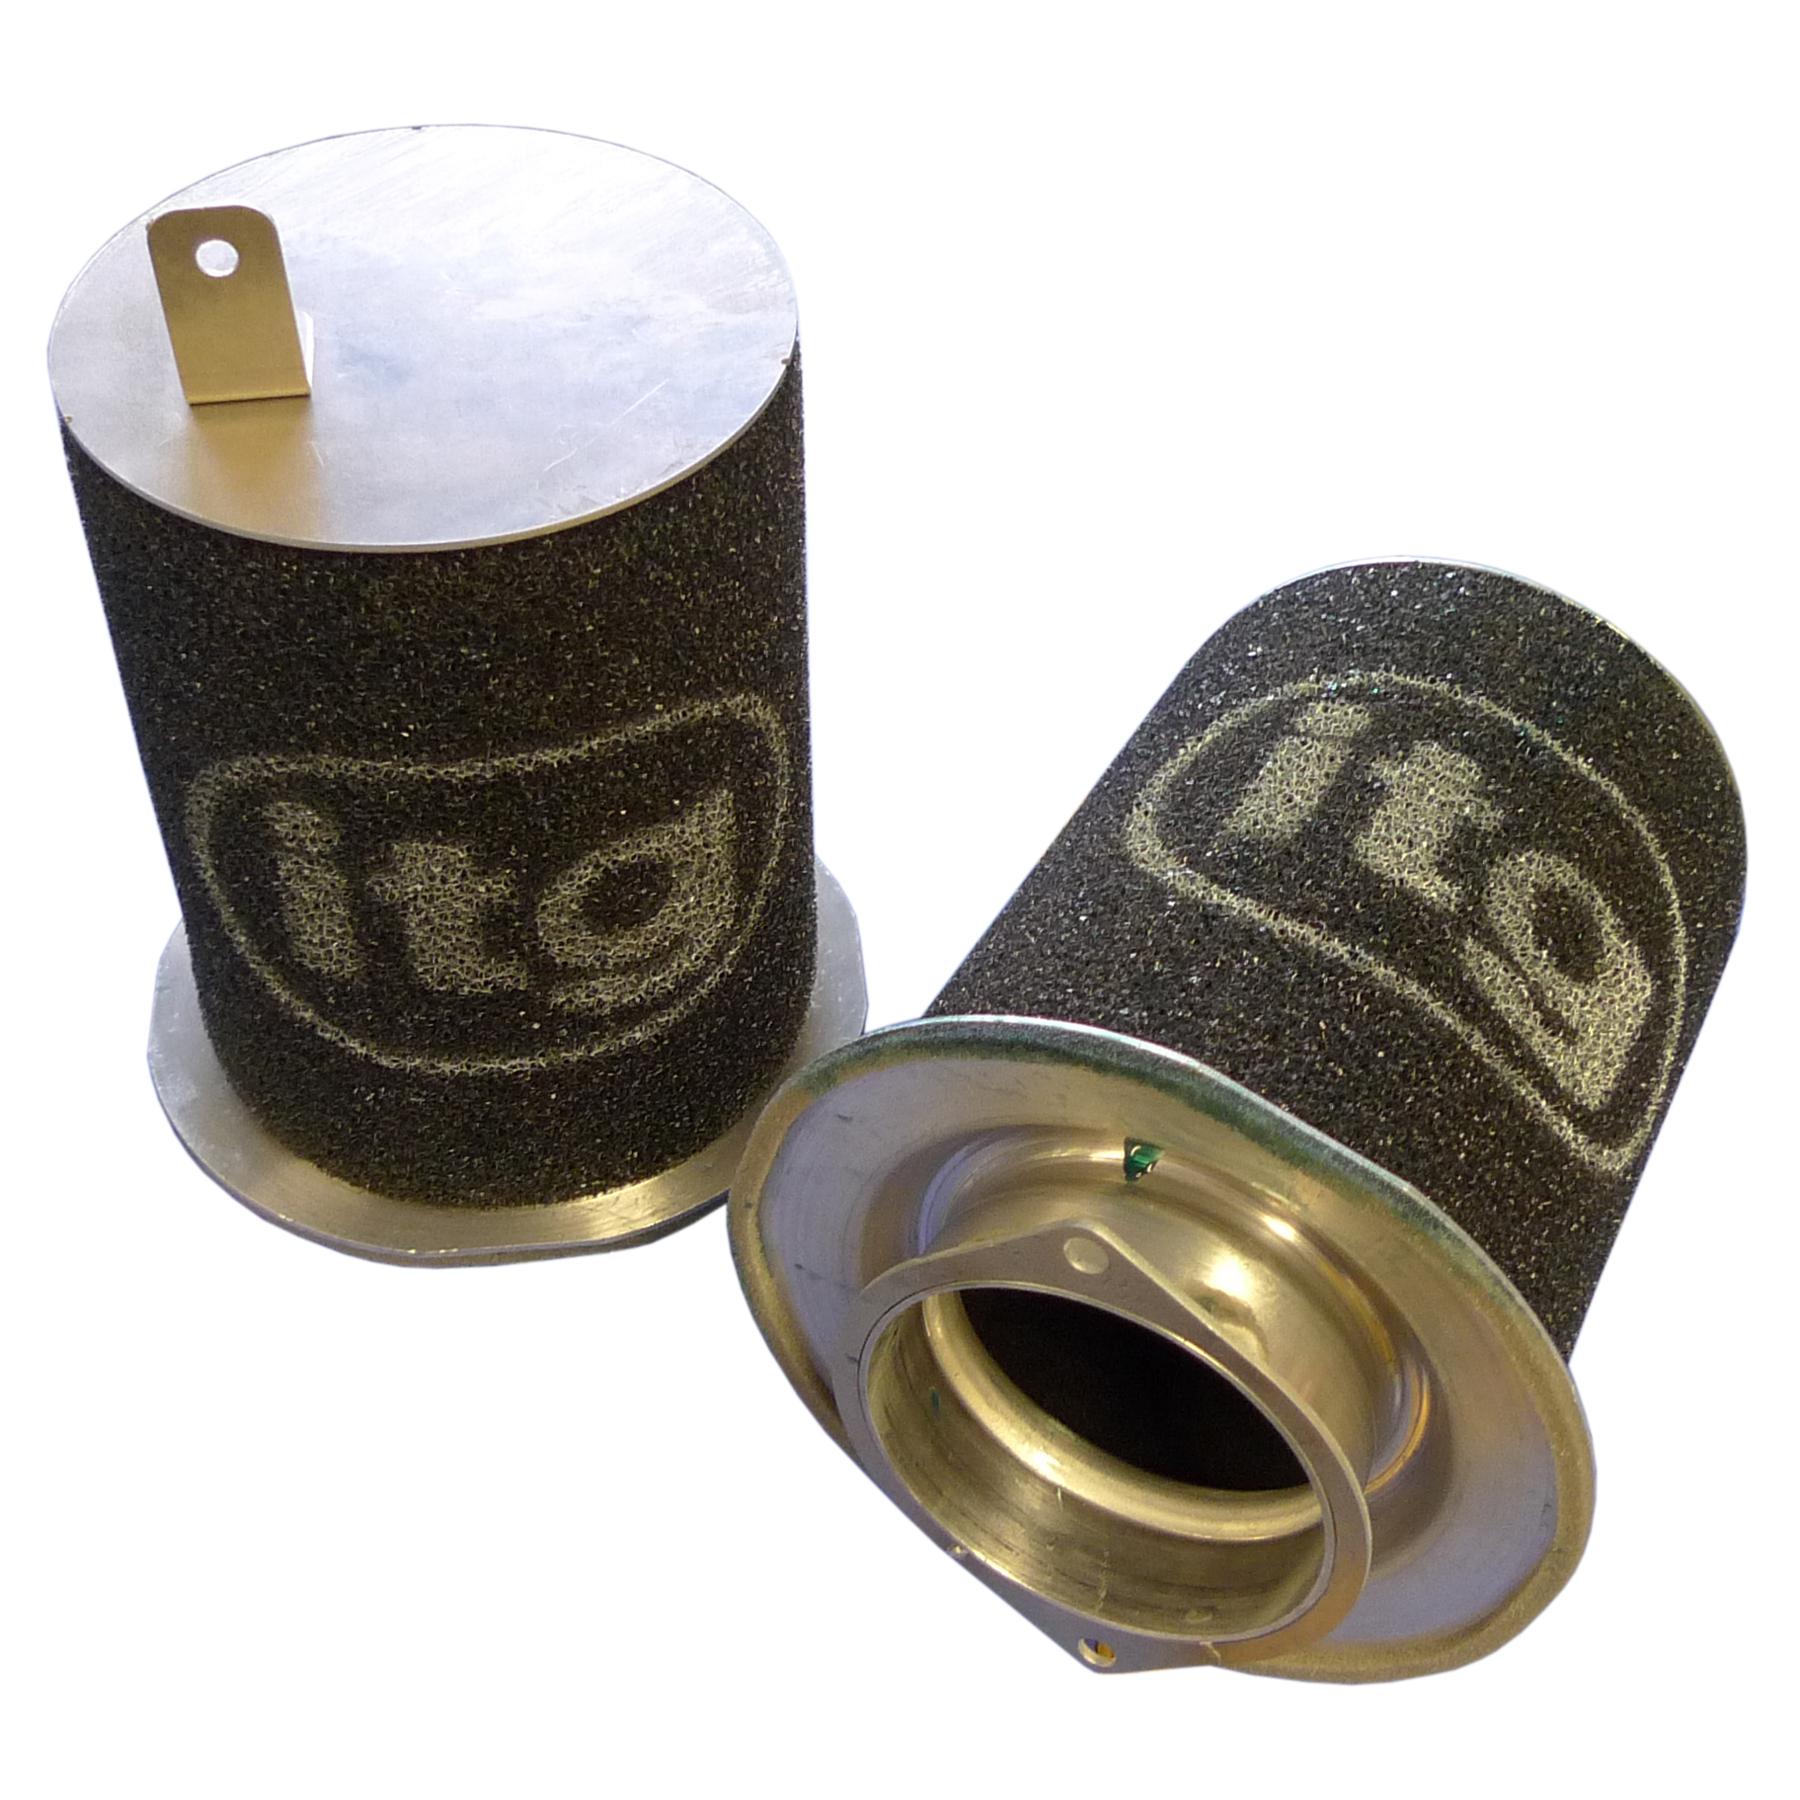 ITG Luftfilter für Audi R8 V8 (2 Filter geliefert)